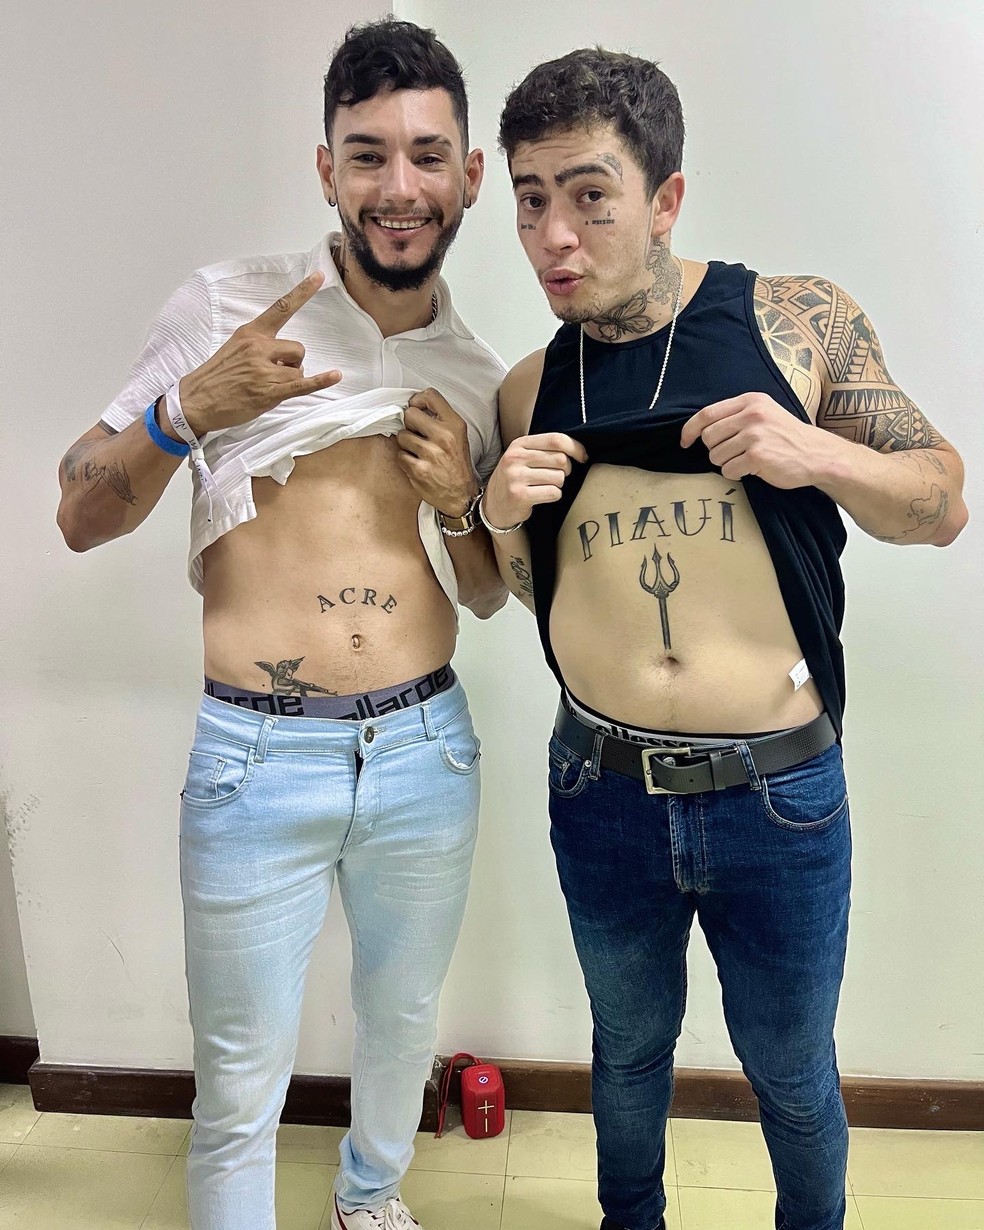 Assim como o ídolo, Luiz tatuou o nome do estado na barriga  — Foto: Arquivo pessoal 